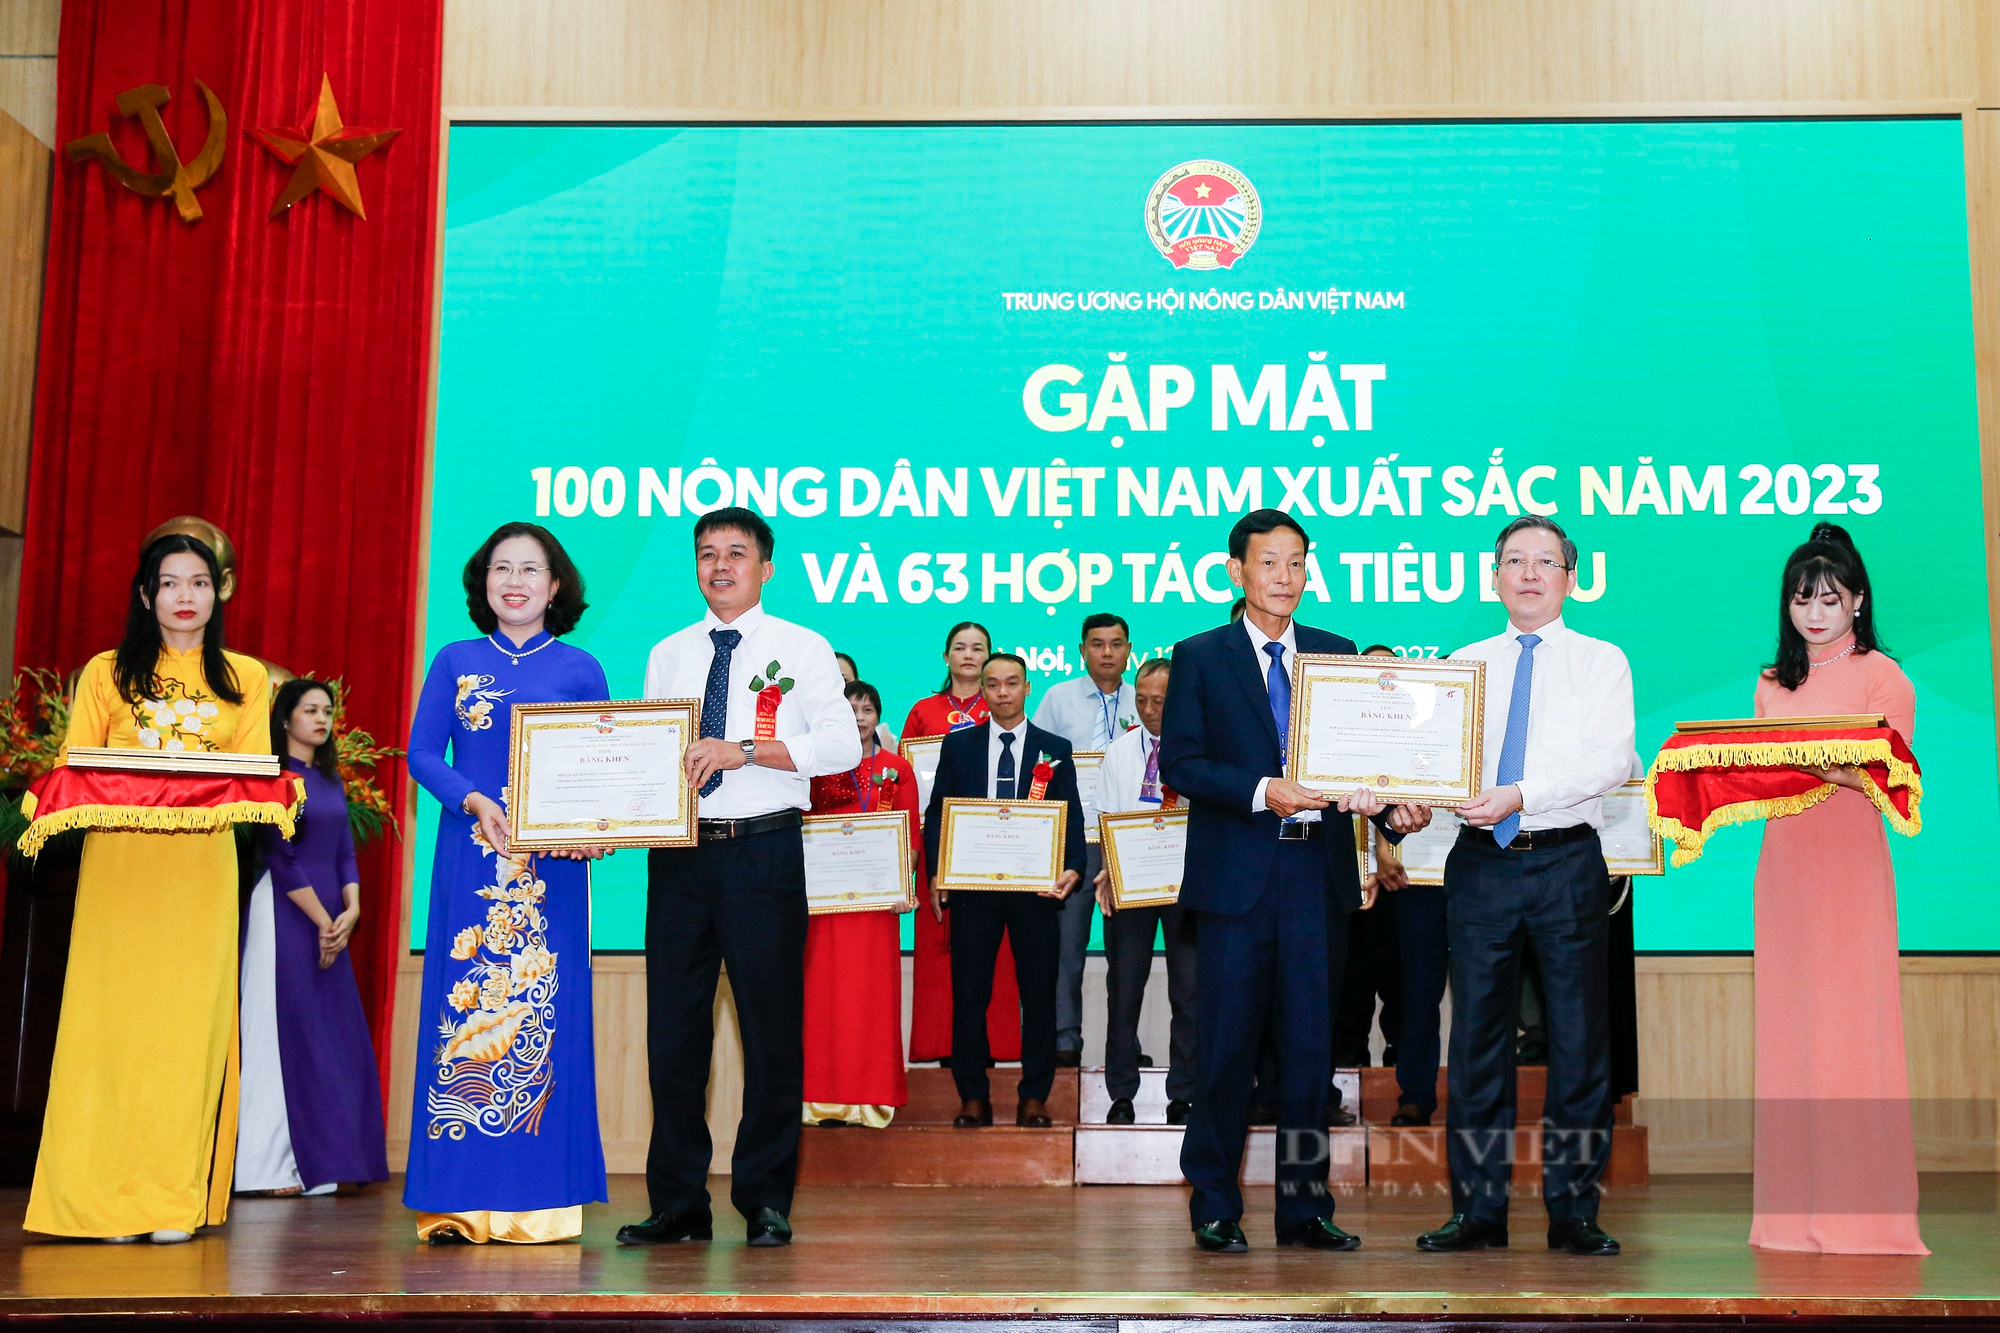 Hình ảnh 163 NDVNXS và HTX tiêu biểu 2023 nhận bằng khen từ Trung ương Hội nông dân Việt Nam - Ảnh 6.